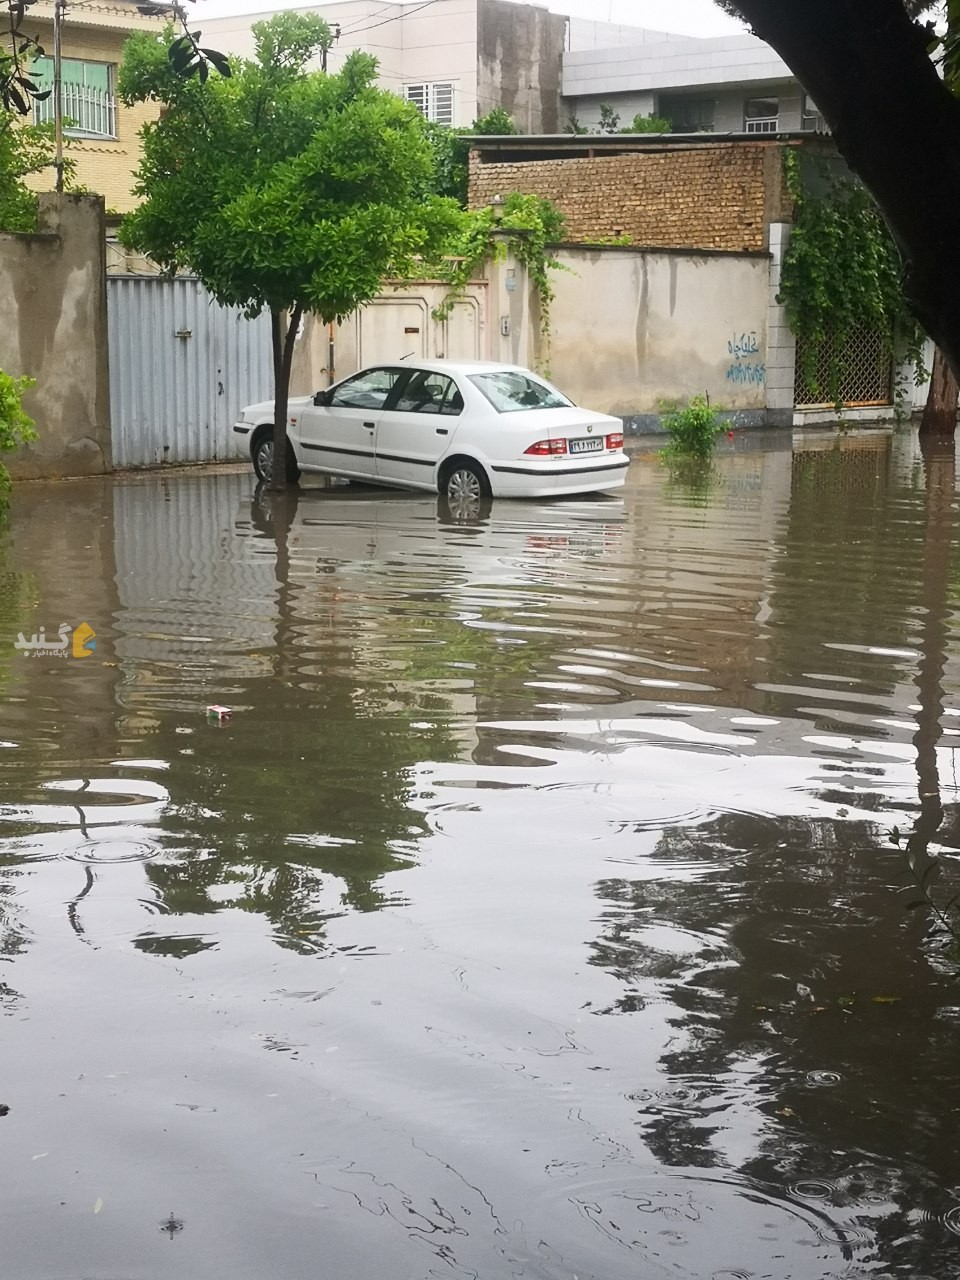 تصاویر آب گرفتگی امروز خیابون نامجو، حدفاصل خرمشهر و 17 شهریور غربی گنبدکاووس